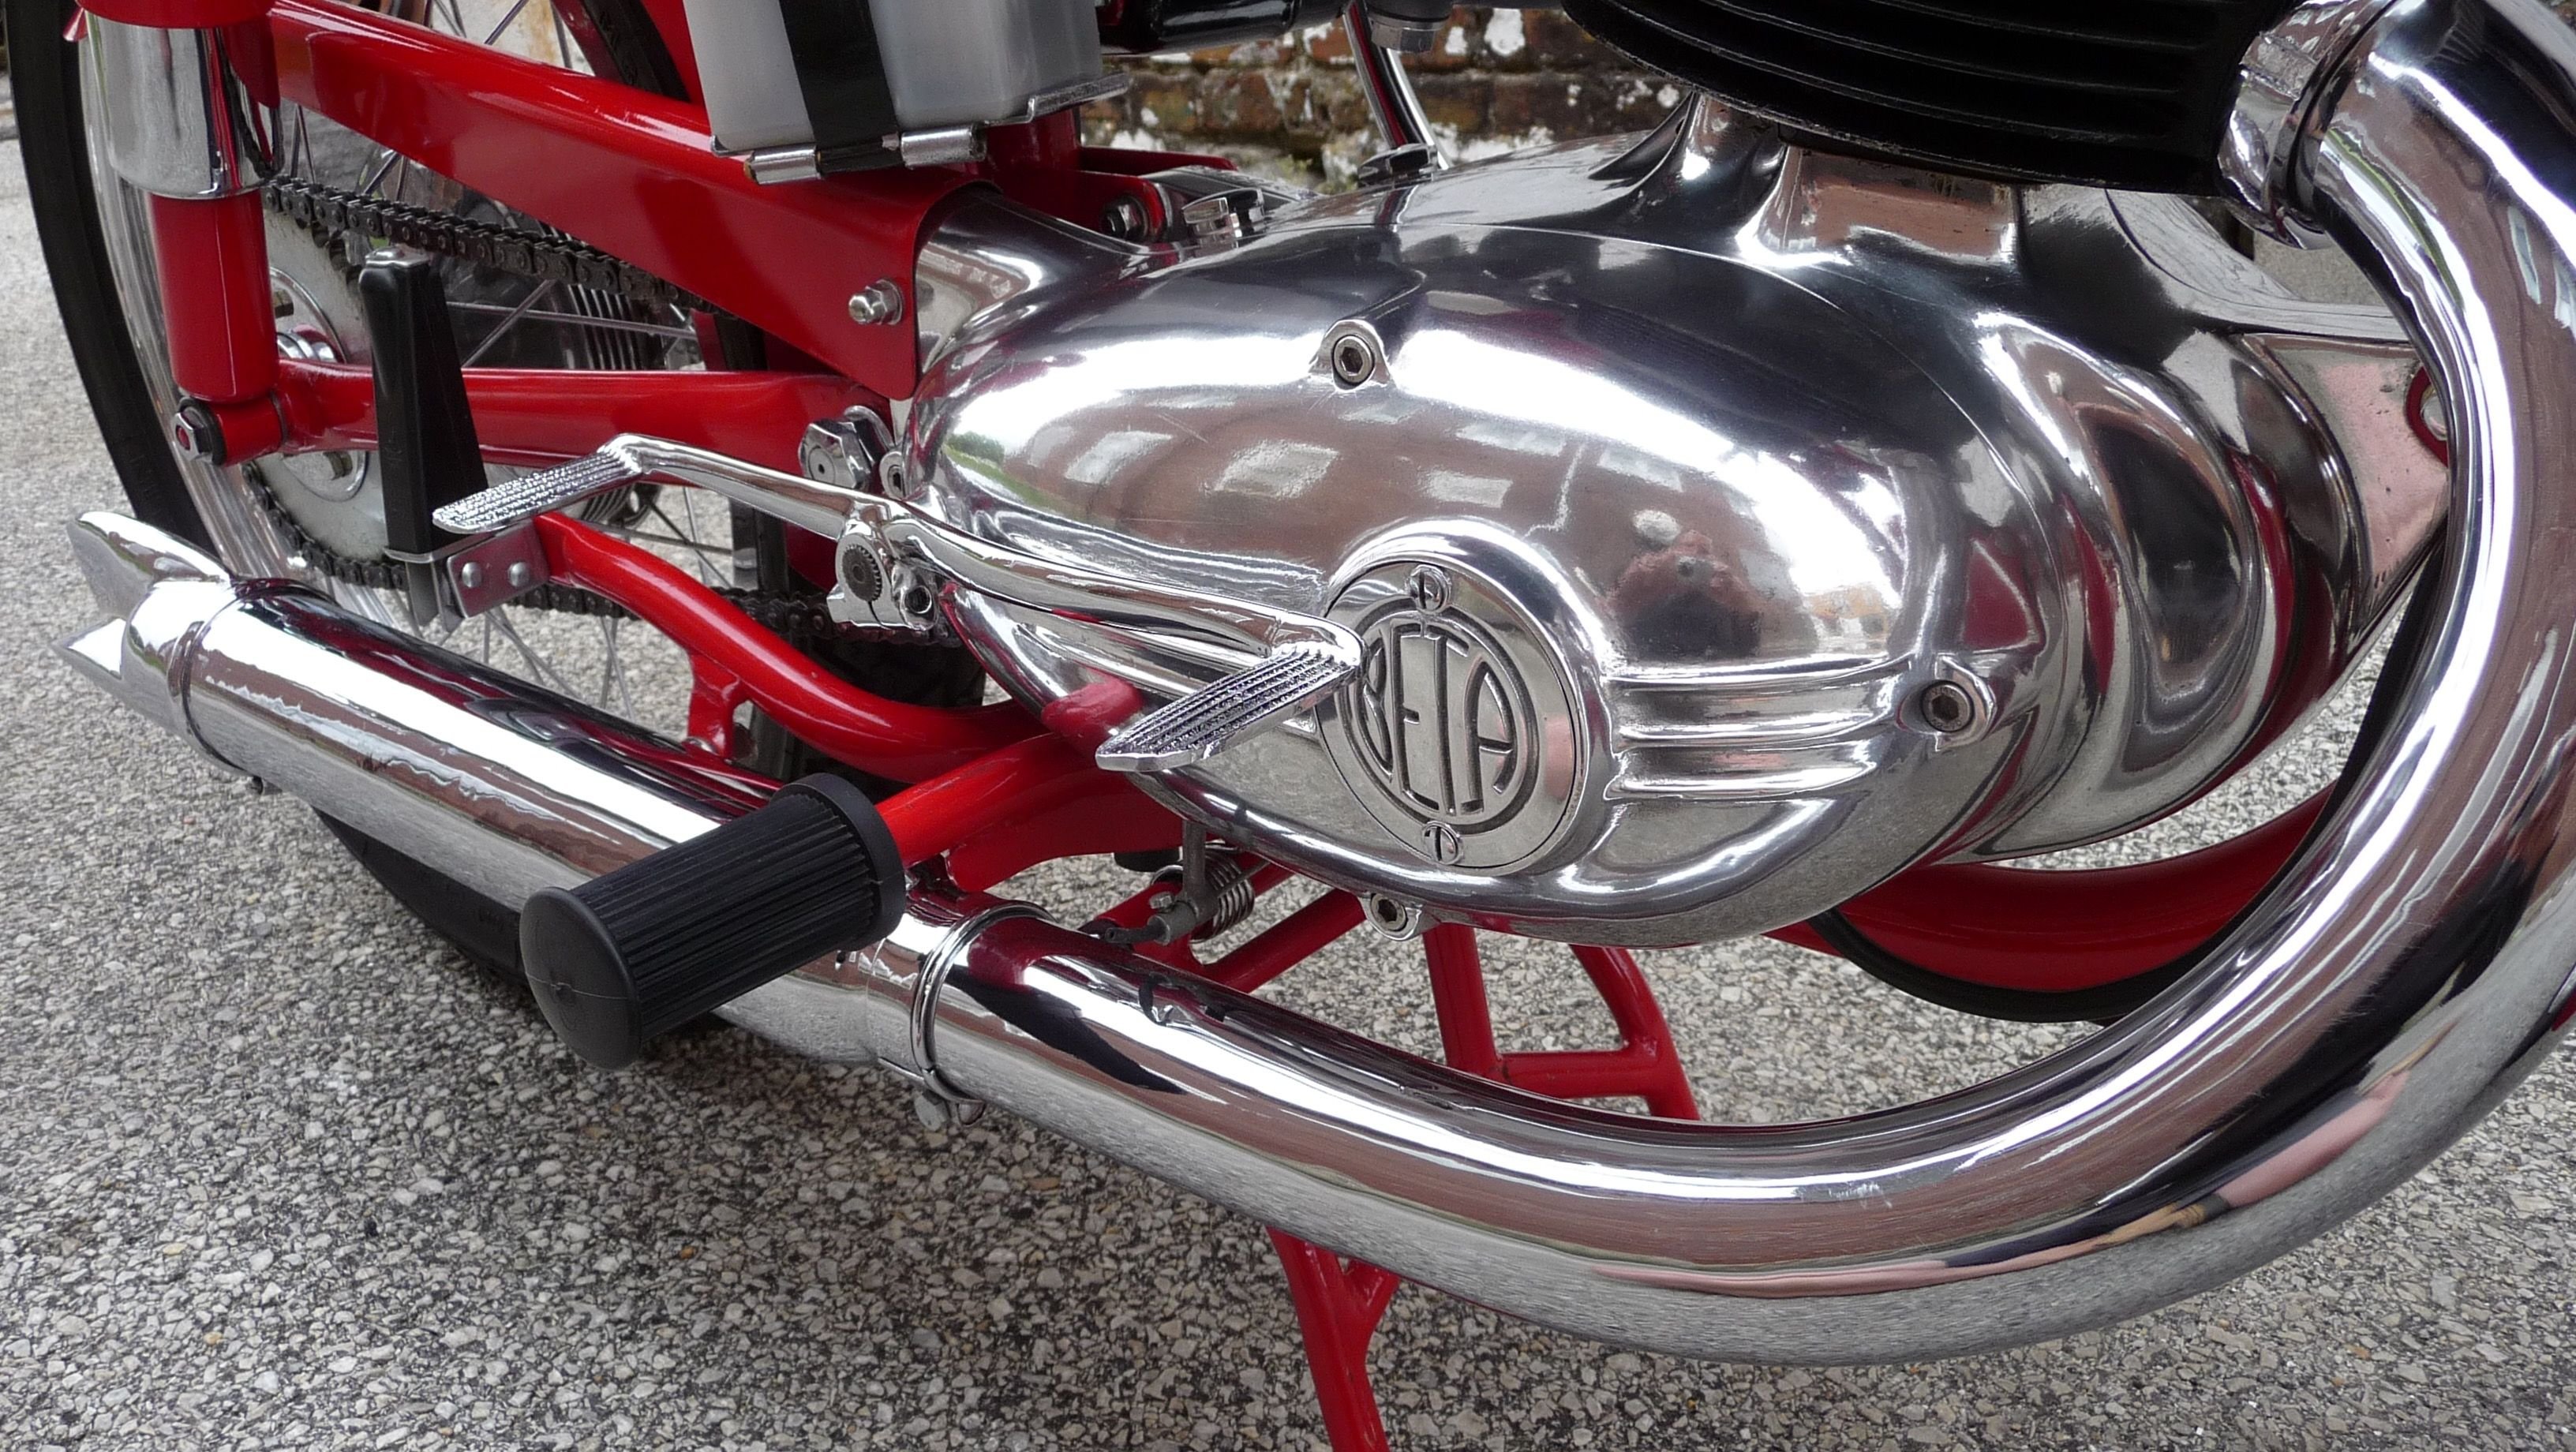 1956 Moto Beta Turismo 175